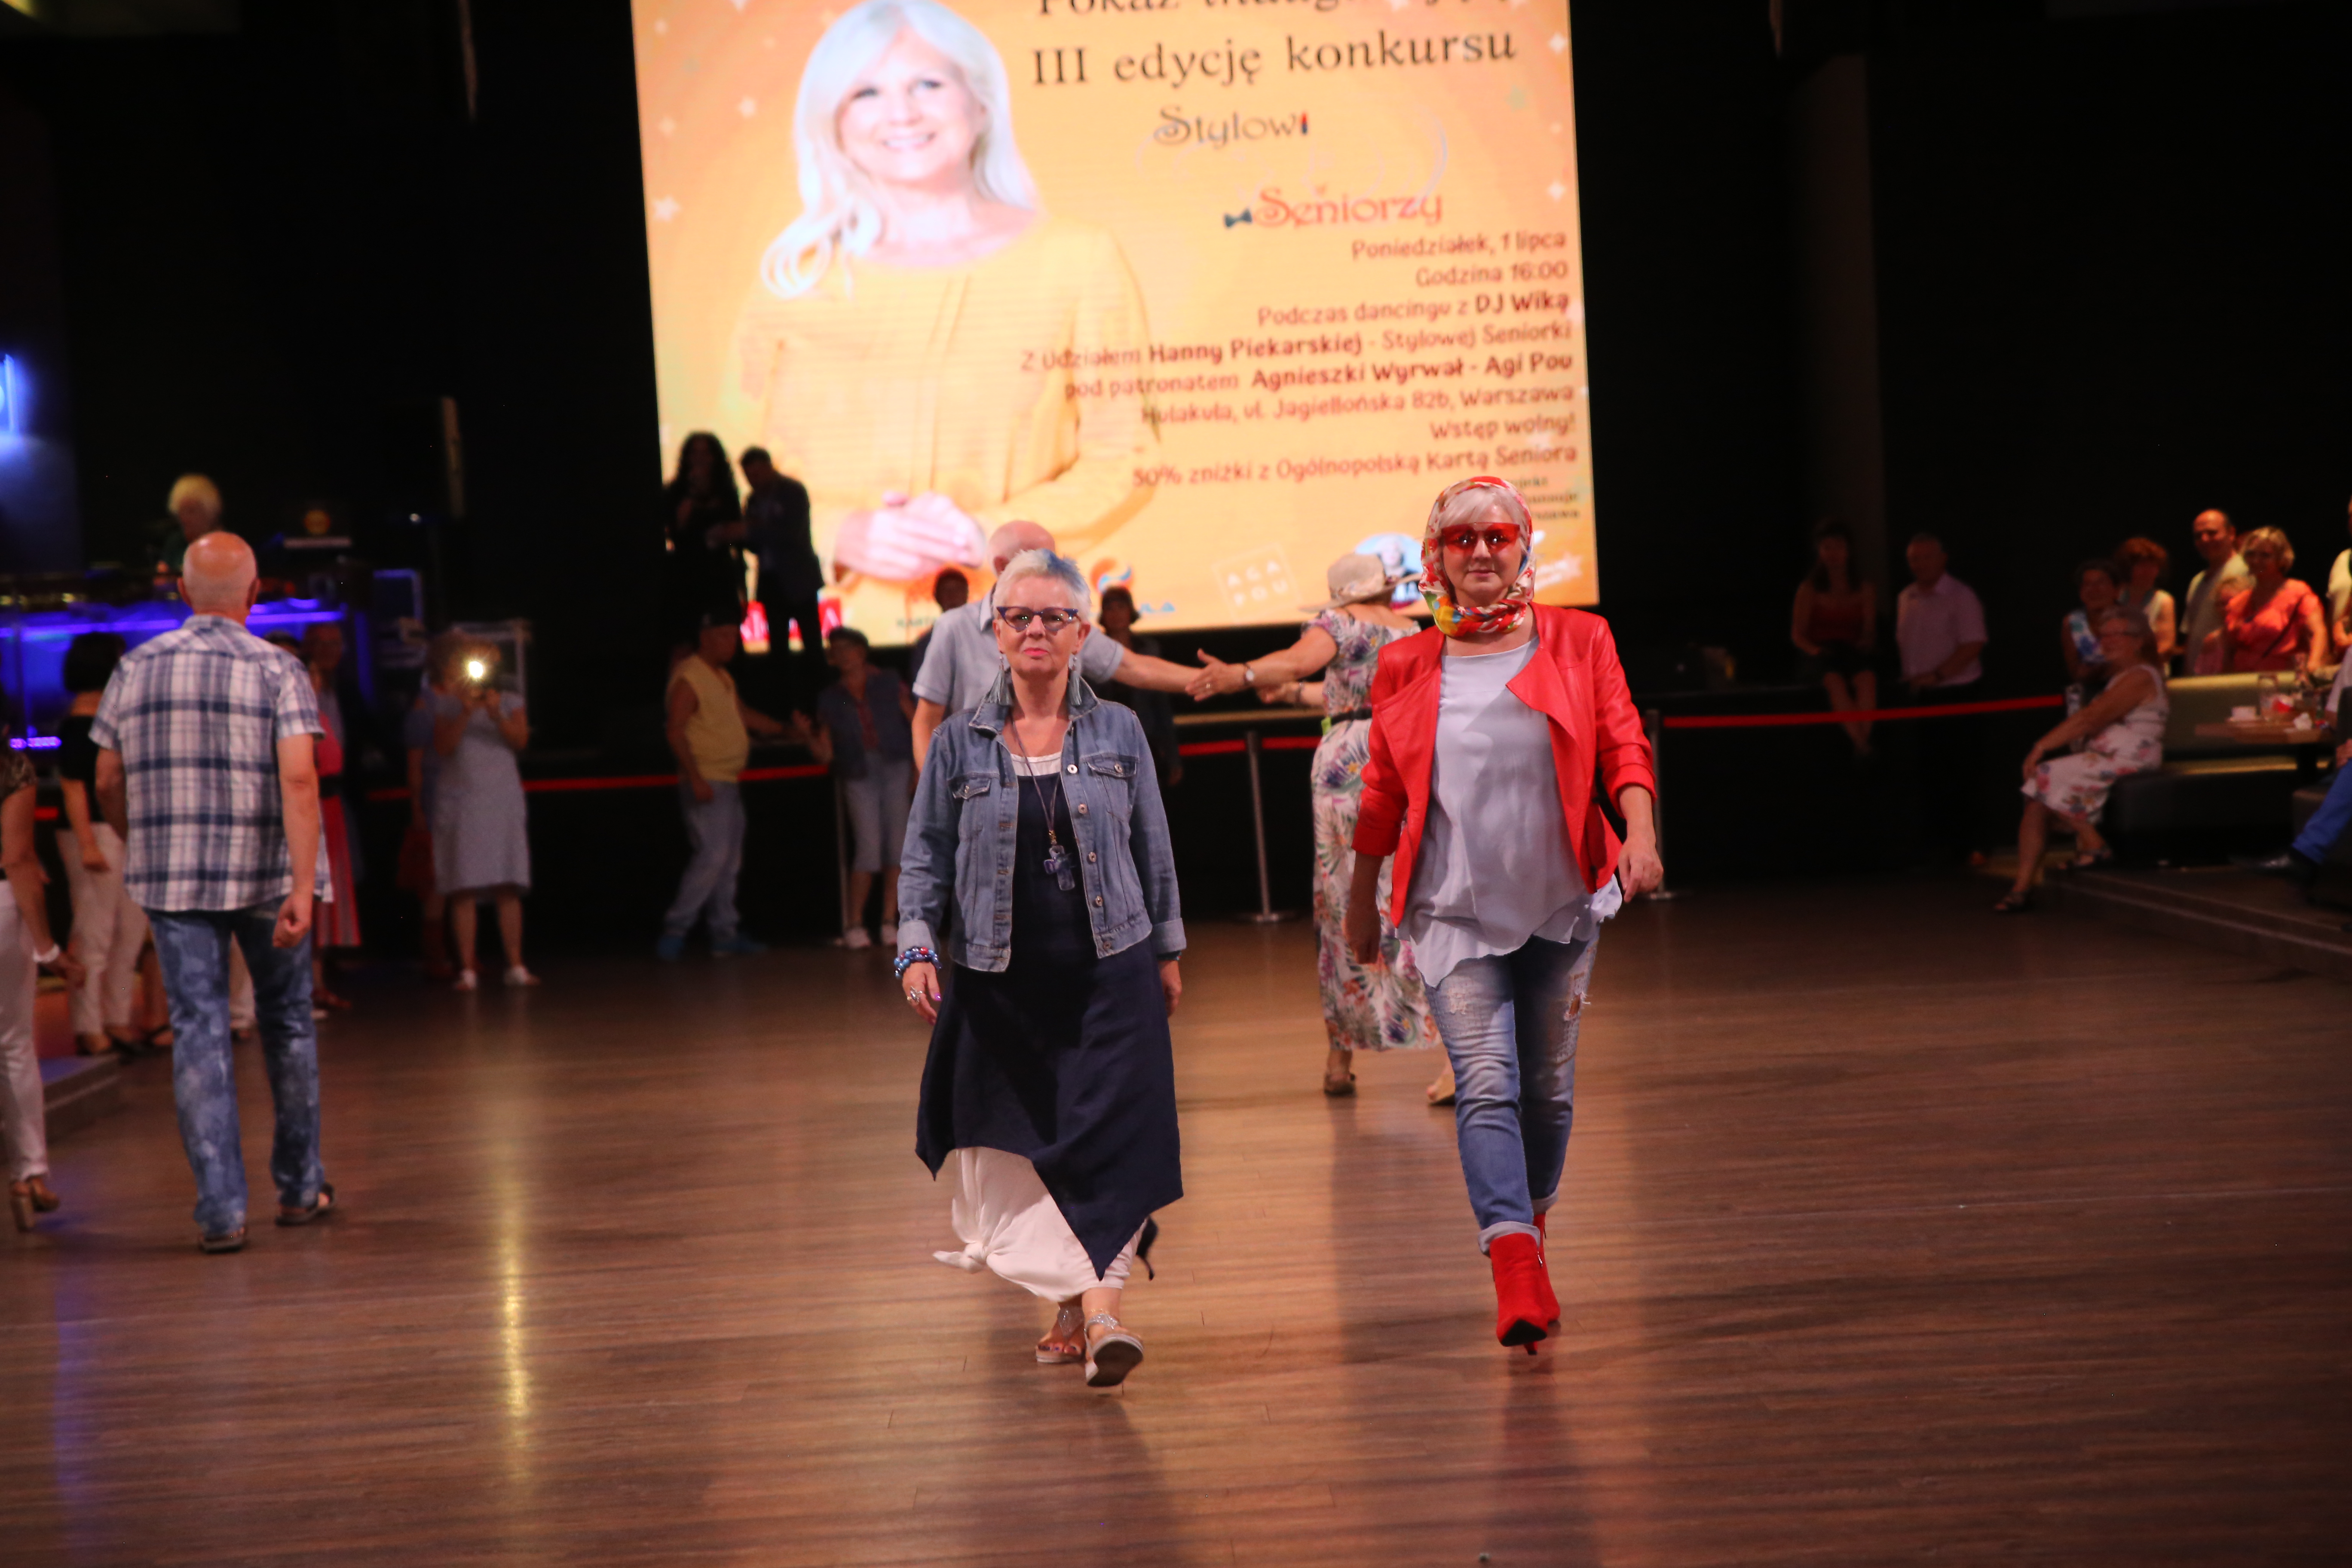 Fotorelacja z pokazu mody inaugurującego trzecią edycję konkursu Stylowi Seniorzy w Hulakula Rozrywkowym Centrum Miasta